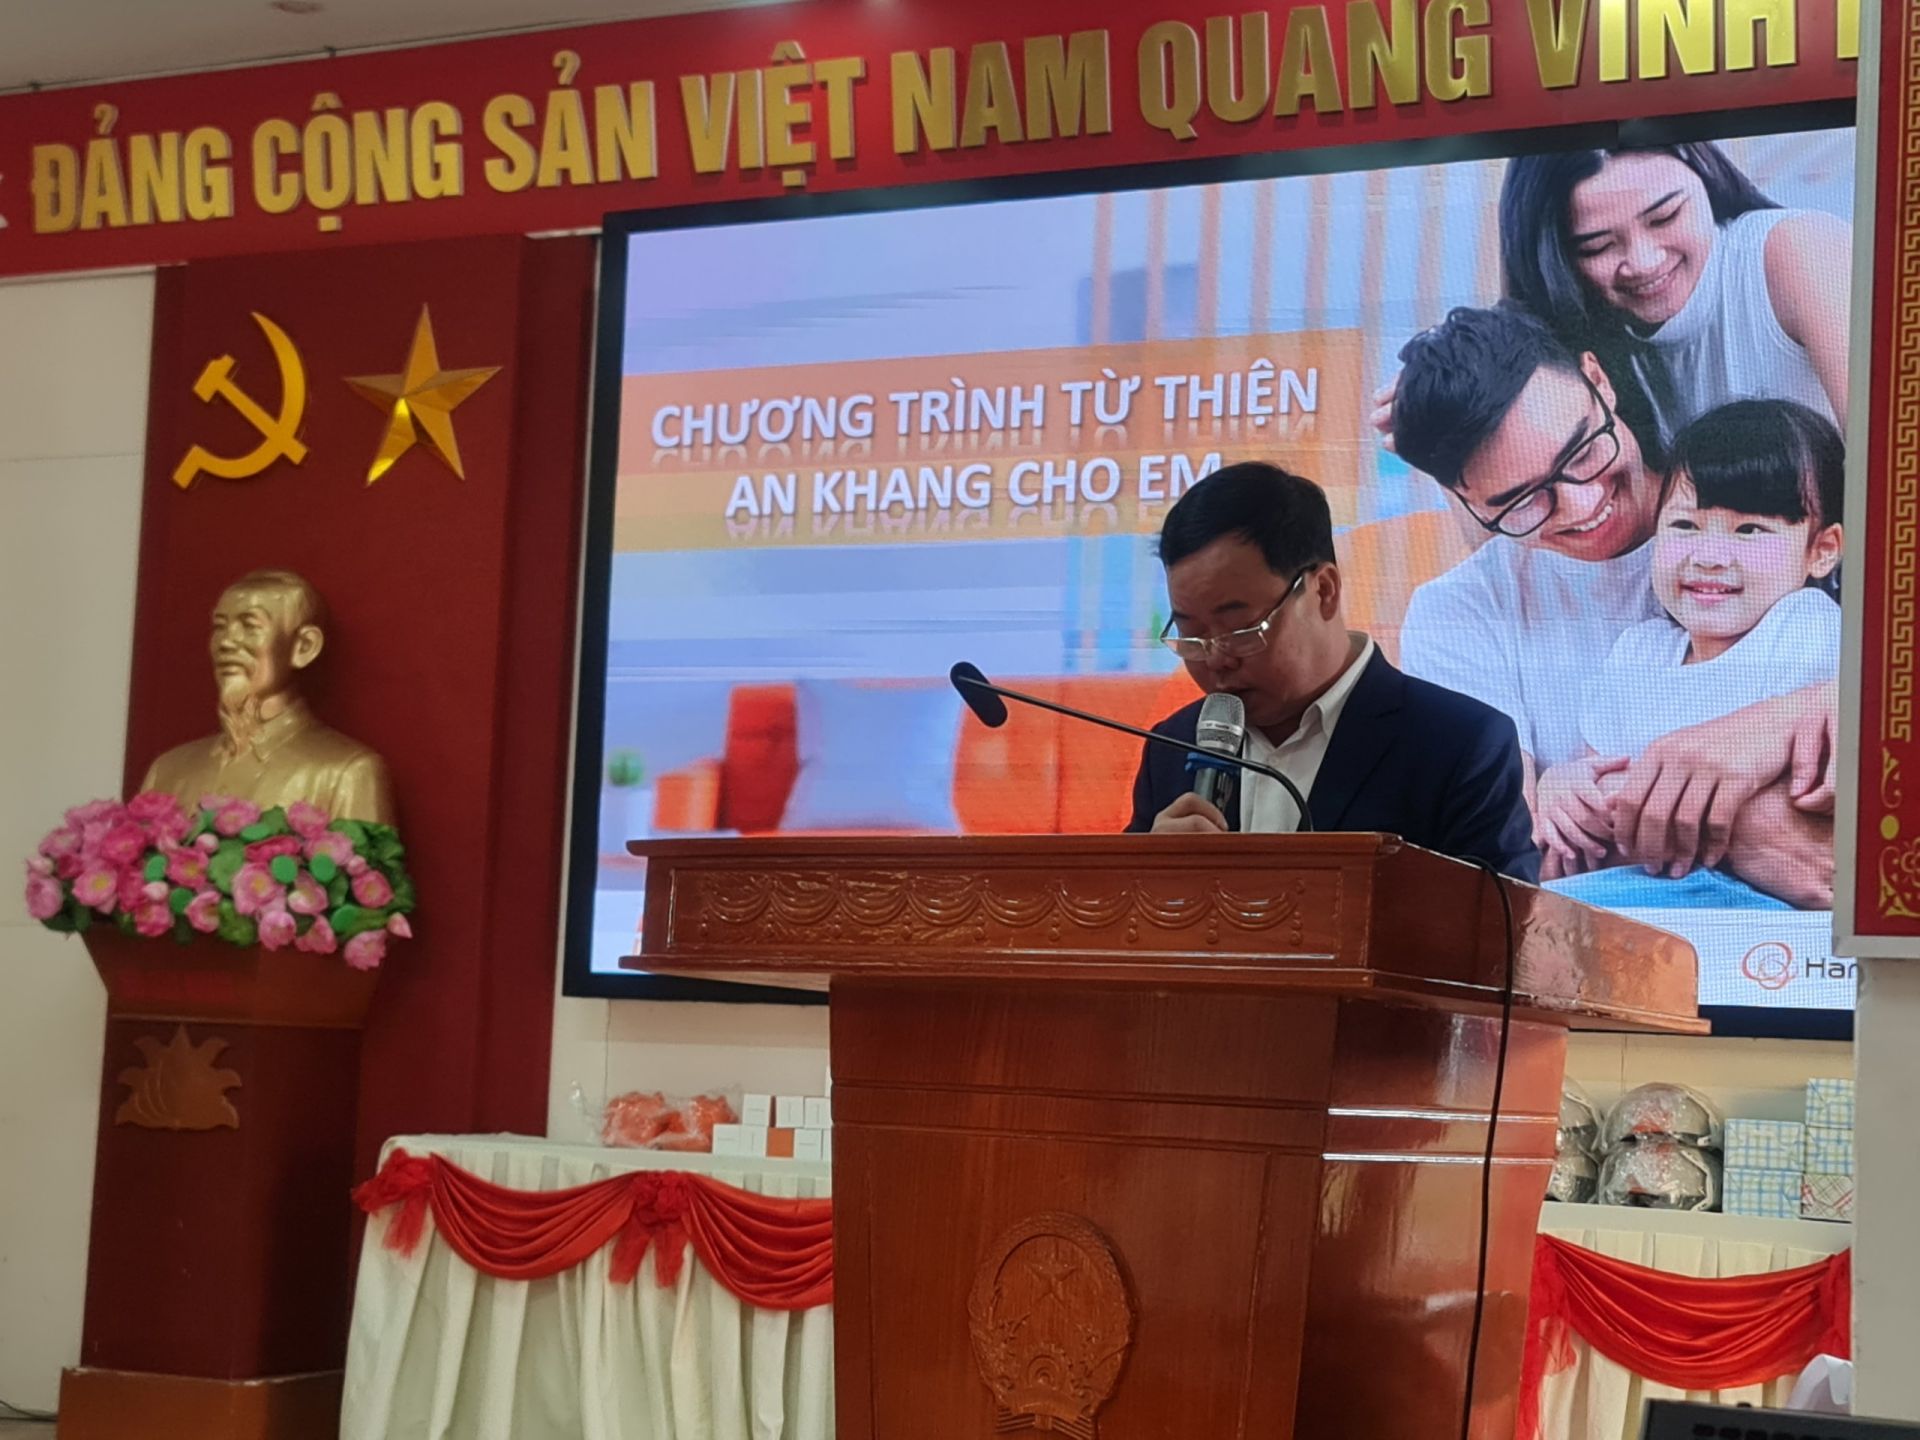 ông Tạ Minh Chiến – Phó Chủ tịch UBND xã Sơn Vi phát biểu tại buổi lễ